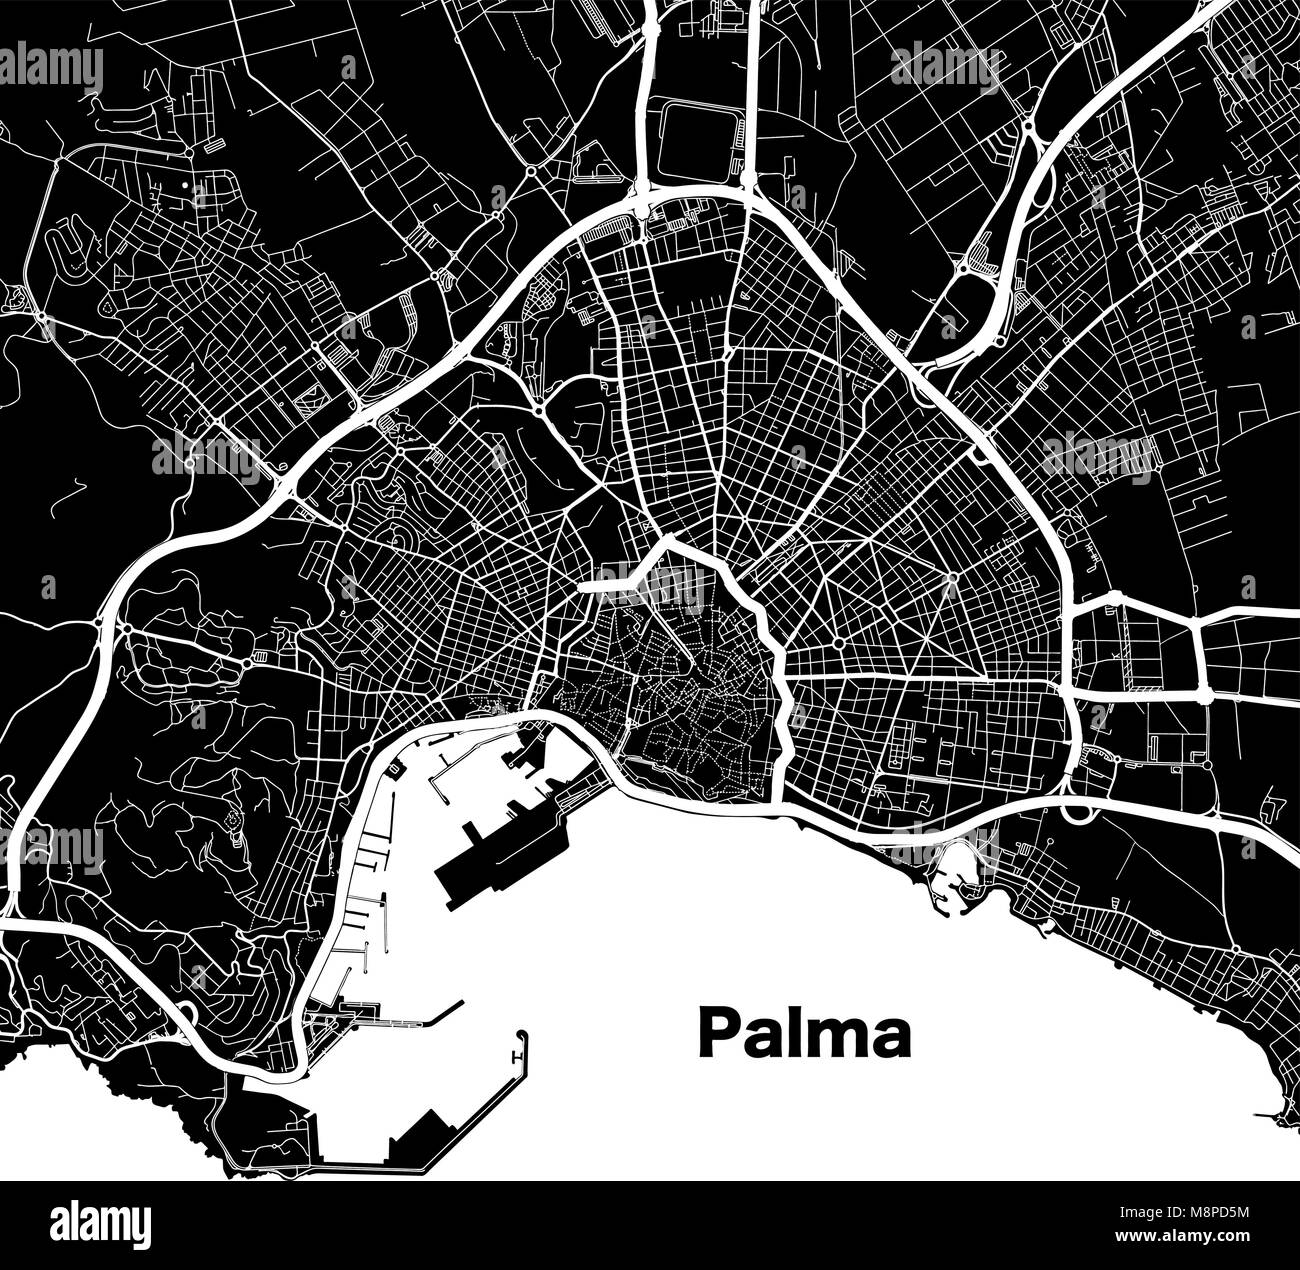 Palma de Mallorca urban Vektorkarte. Weiß Autobahnen und Straßen in der Stadt auf schwarzem Hintergrund. Stock Vektor